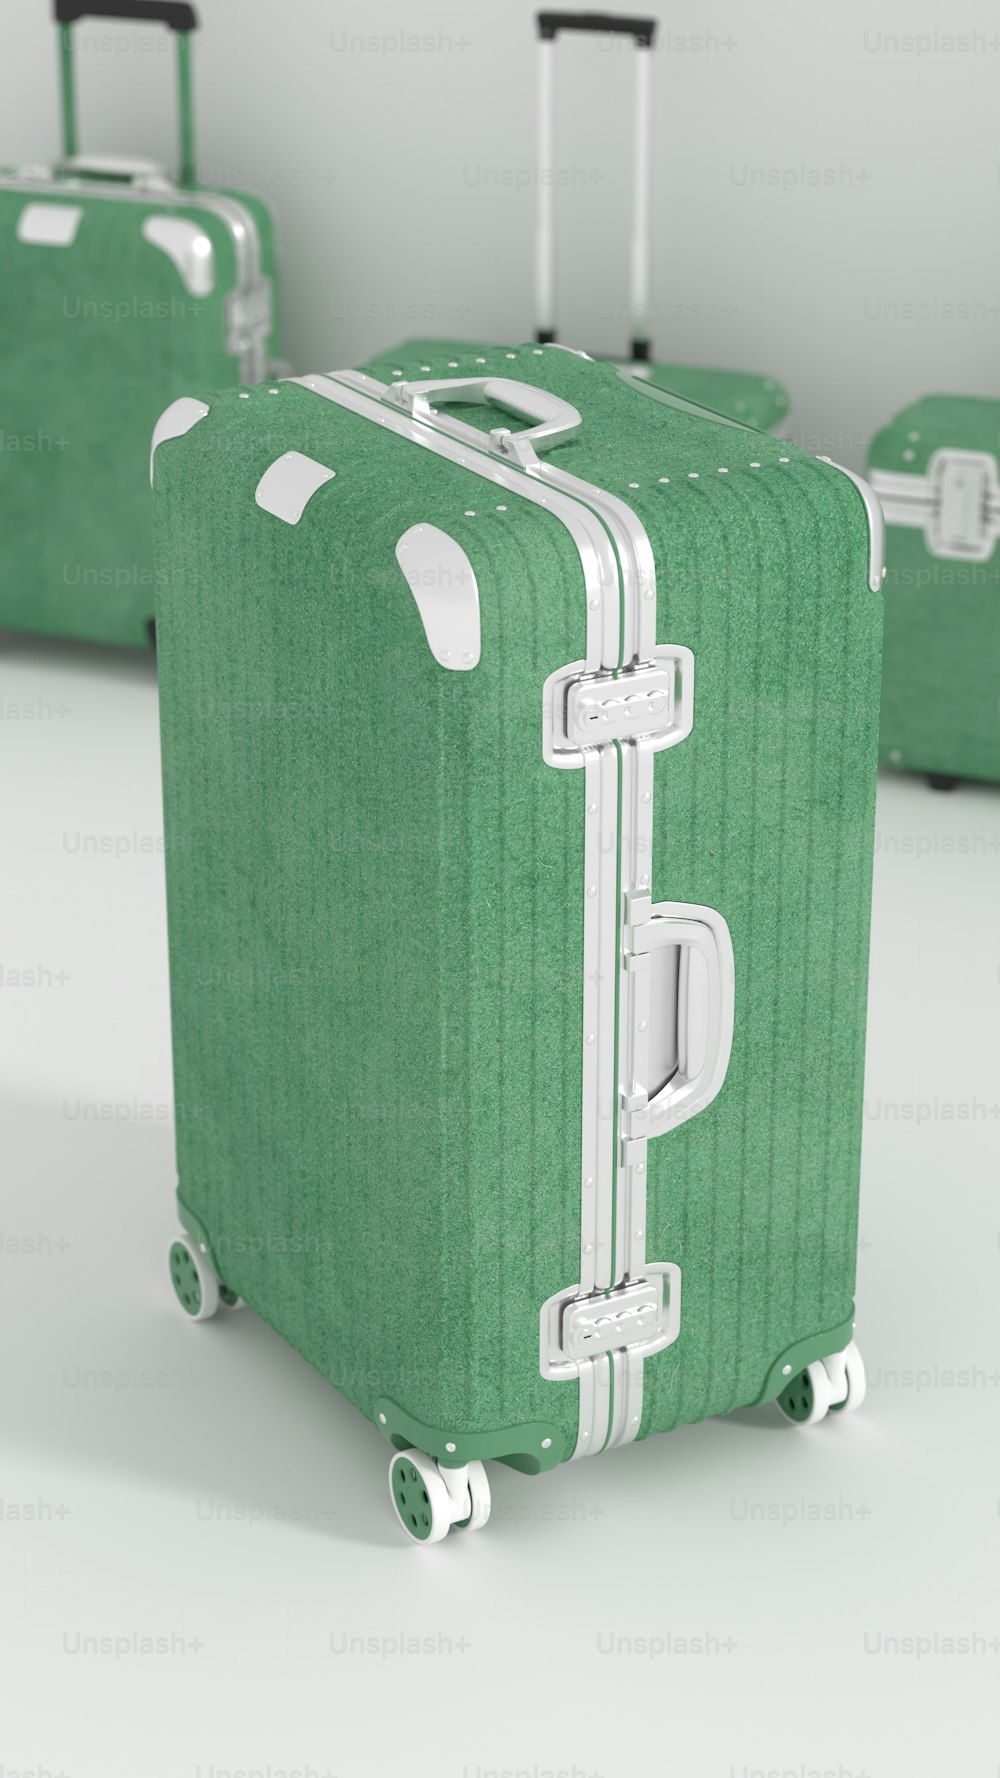 Tre bagagli verdi seduti uno accanto all'altro